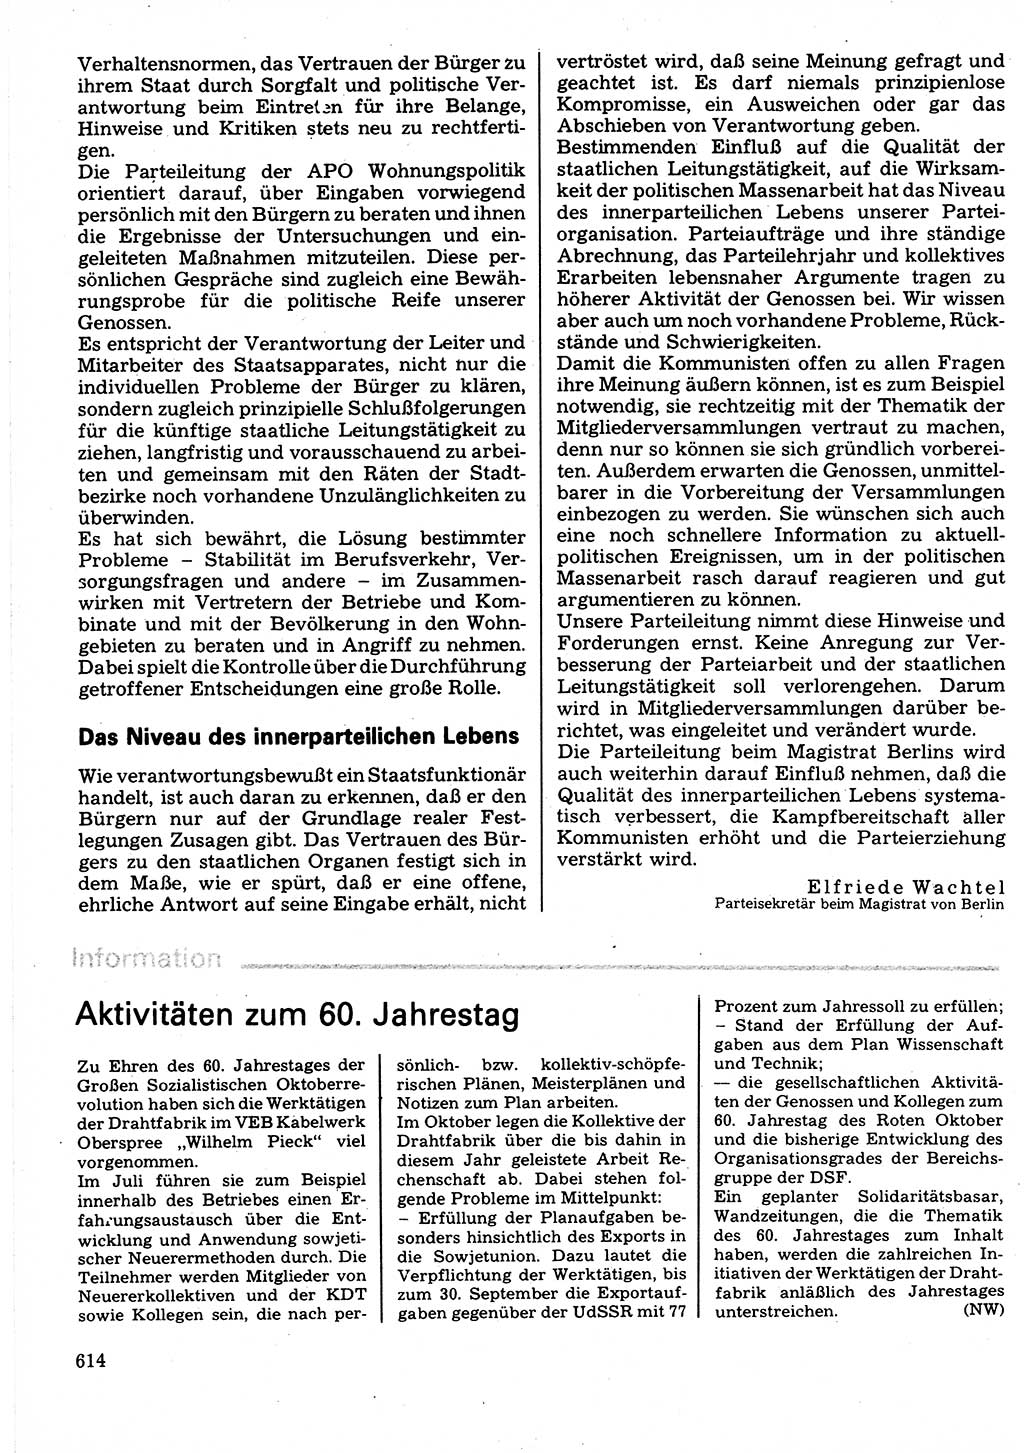 Neuer Weg (NW), Organ des Zentralkomitees (ZK) der SED (Sozialistische Einheitspartei Deutschlands) für Fragen des Parteilebens, 32. Jahrgang [Deutsche Demokratische Republik (DDR)] 1977, Seite 614 (NW ZK SED DDR 1977, S. 614)